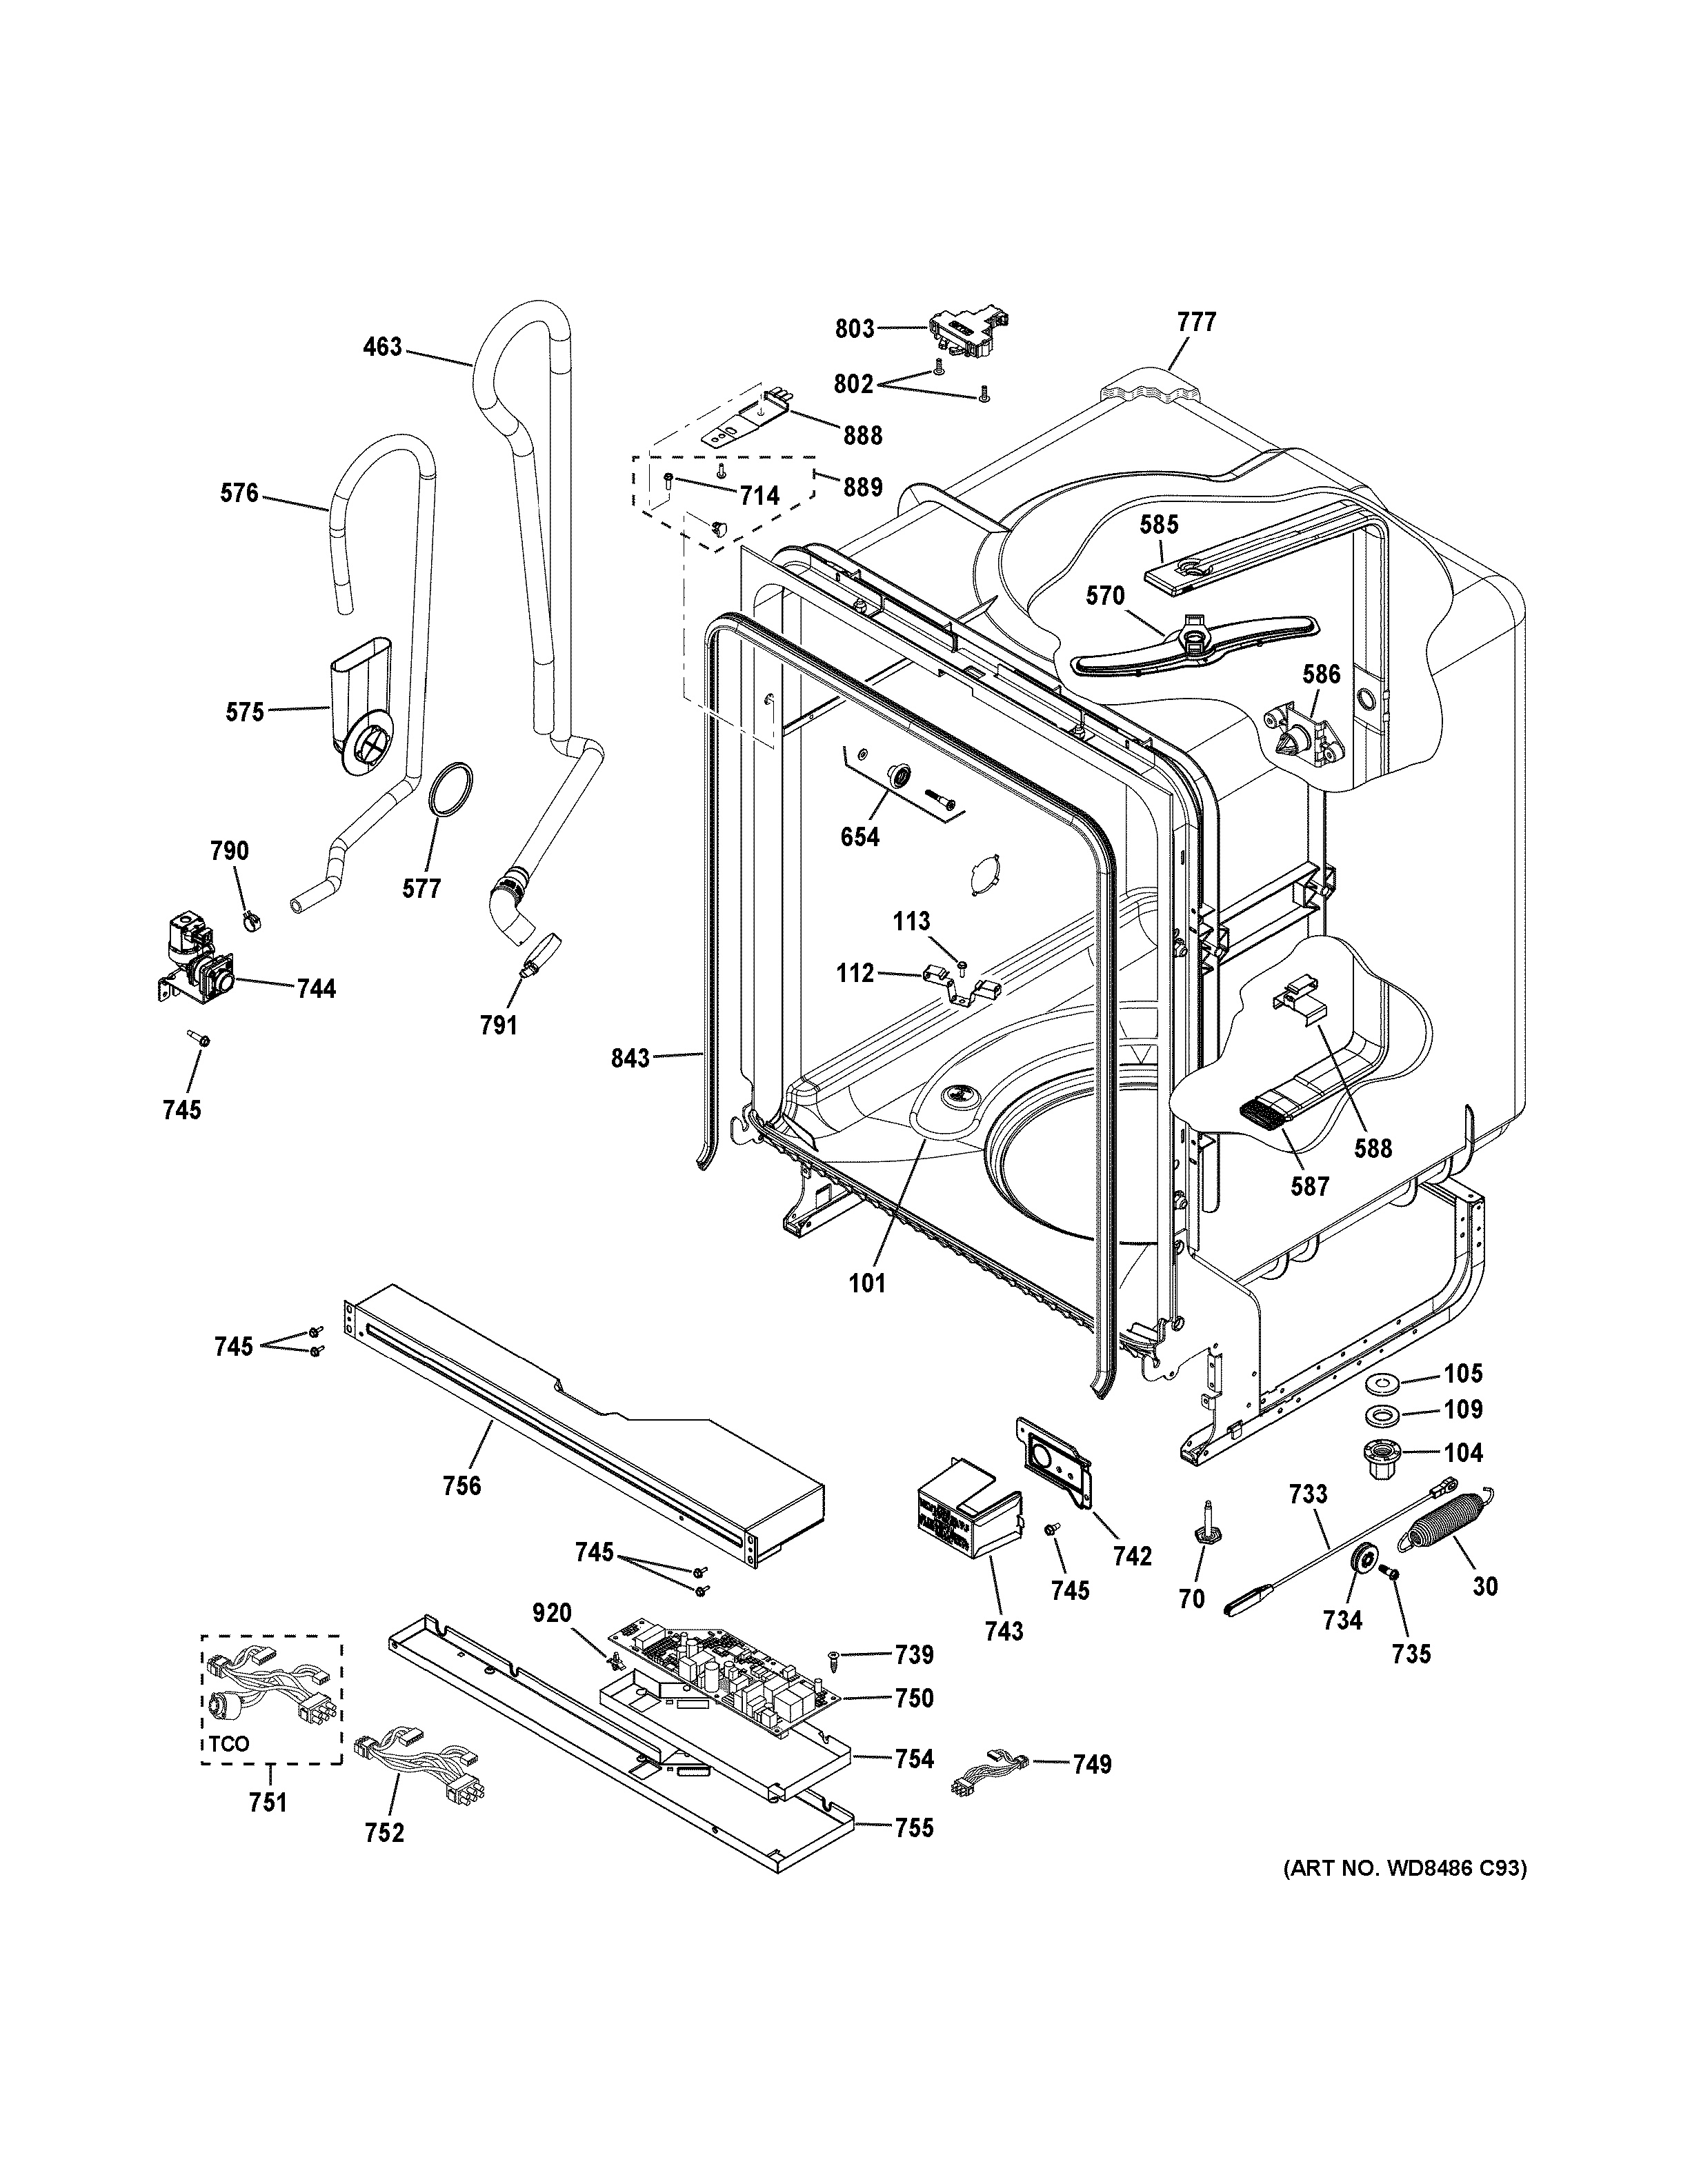 35 Asko Dishwasher Parts Diagram - Wiring Diagram Database